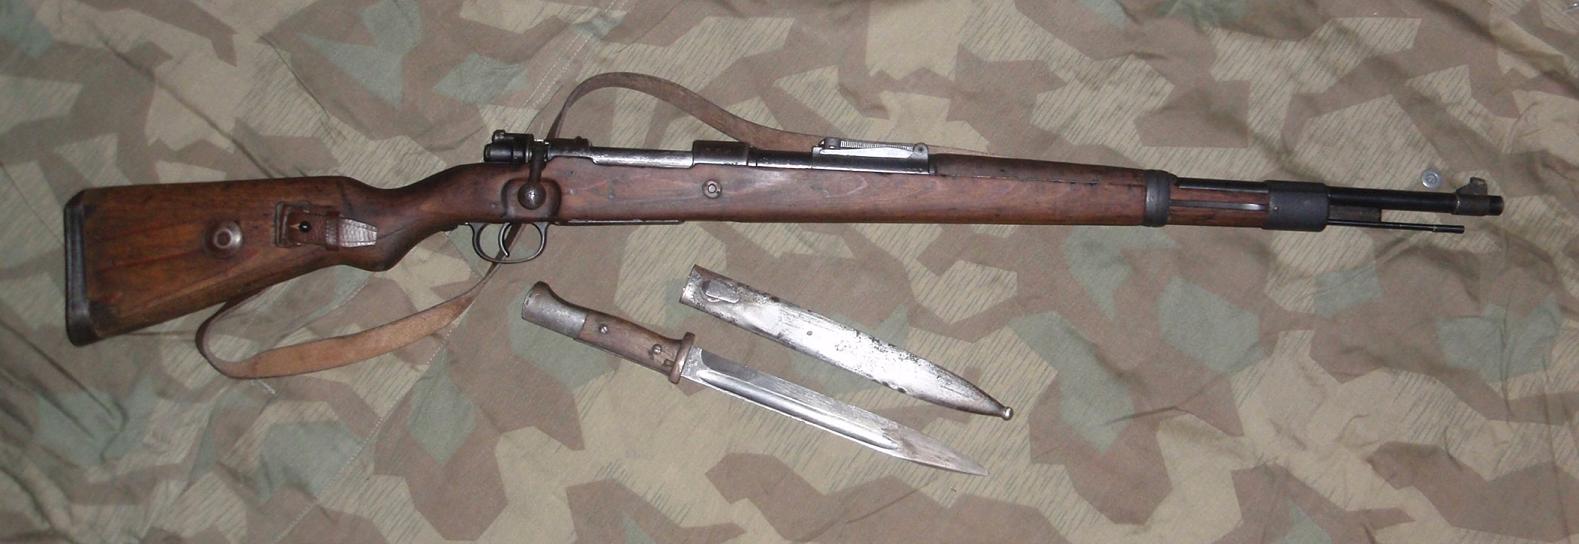 Mauser K98k 1939.jpg